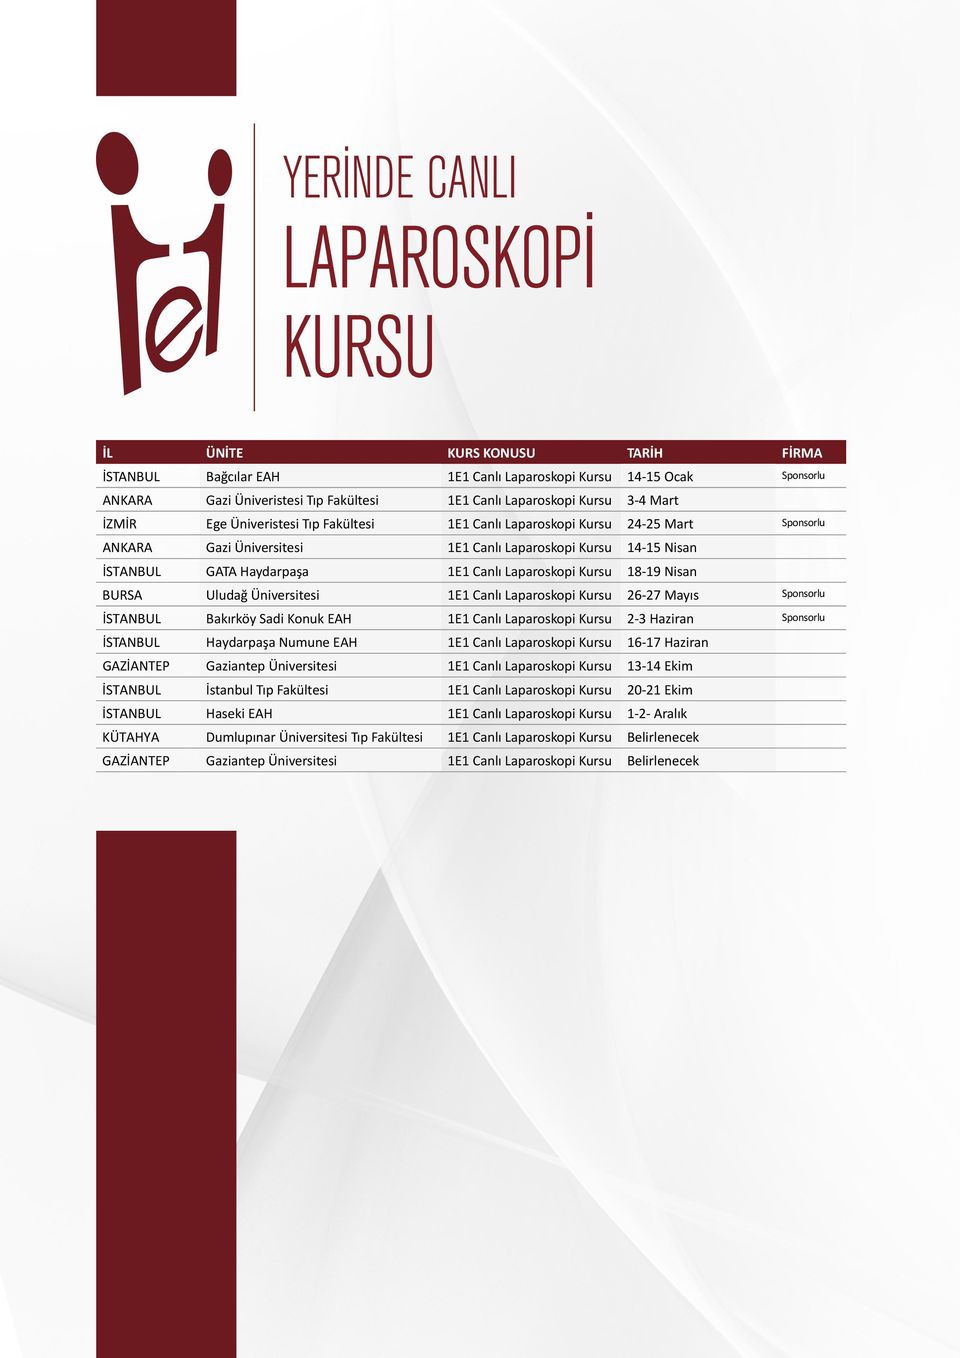 Canlı Laparoskopi Kursu 26-27 Mayıs Sponsorlu İSTANBUL Bakırköy Sadi Konuk EAH 1E1 Canlı Laparoskopi Kursu 2-3 Haziran Sponsorlu İSTANBUL Haydarpaşa Numune EAH 1E1 Canlı Laparoskopi Kursu 16-17